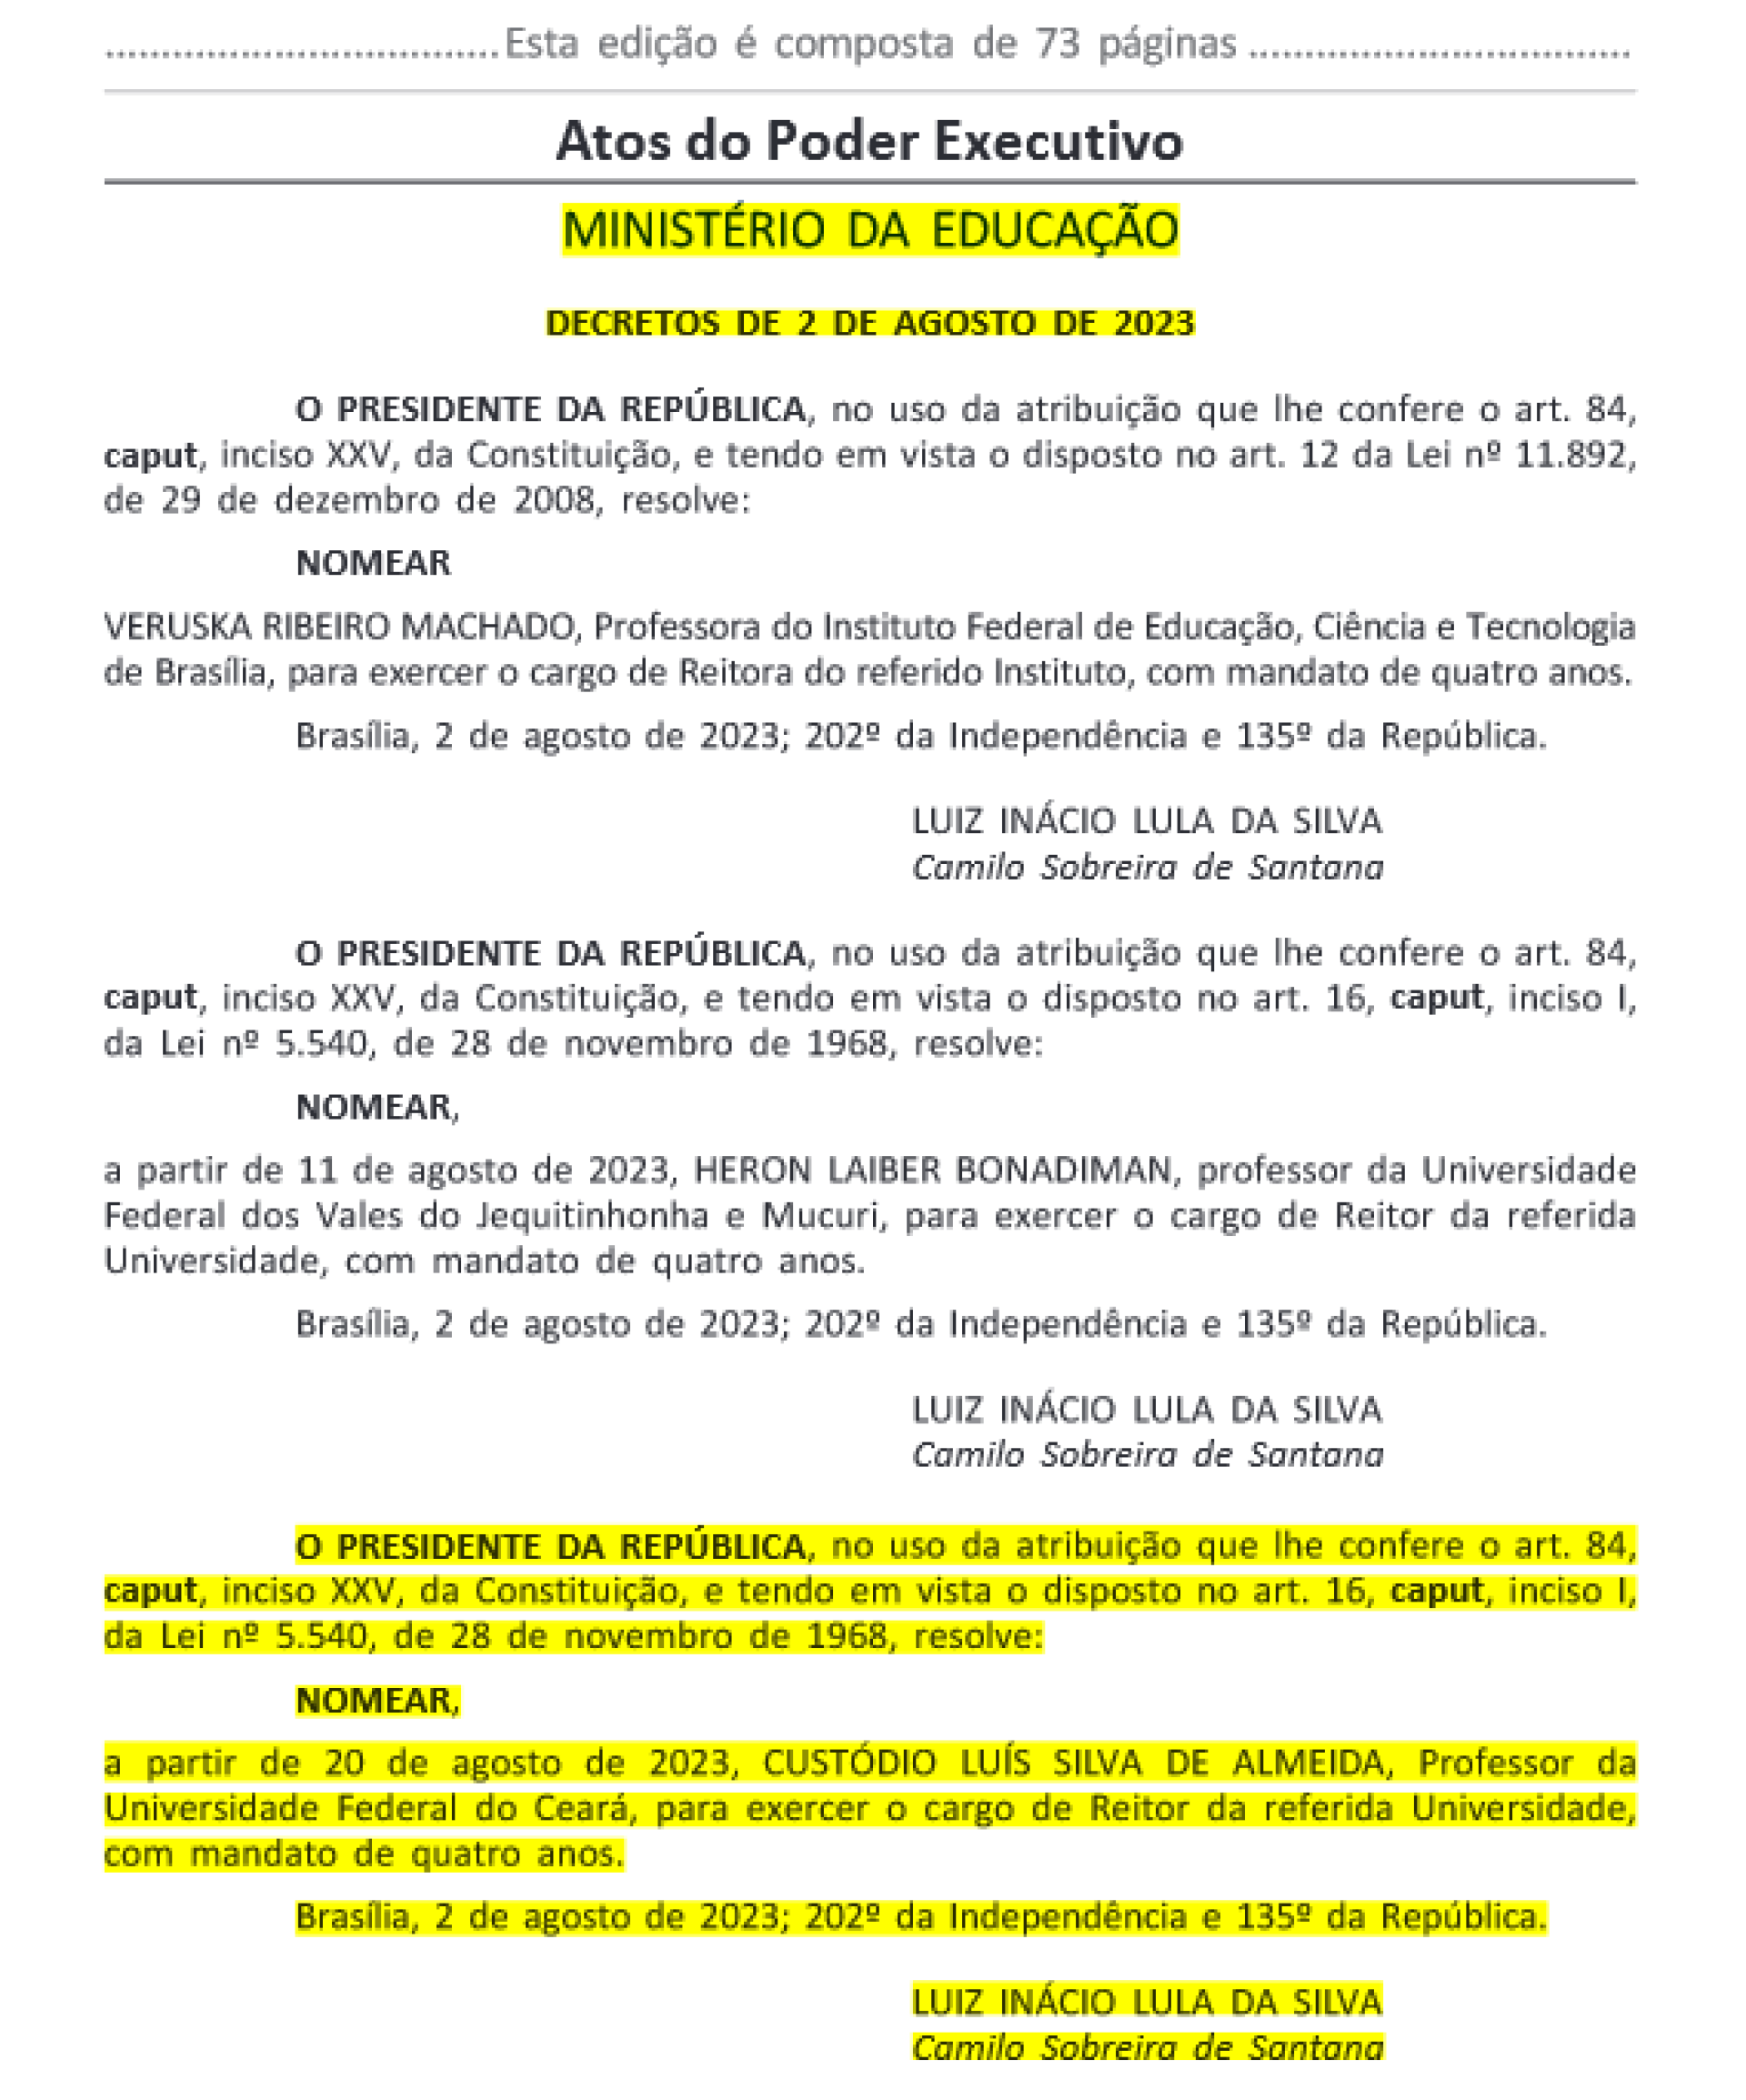 Nomeação do professor Custódio Almeida como reitor da Universidade Federal do Ceará (UFC)(Foto: Diário Oficial da União)